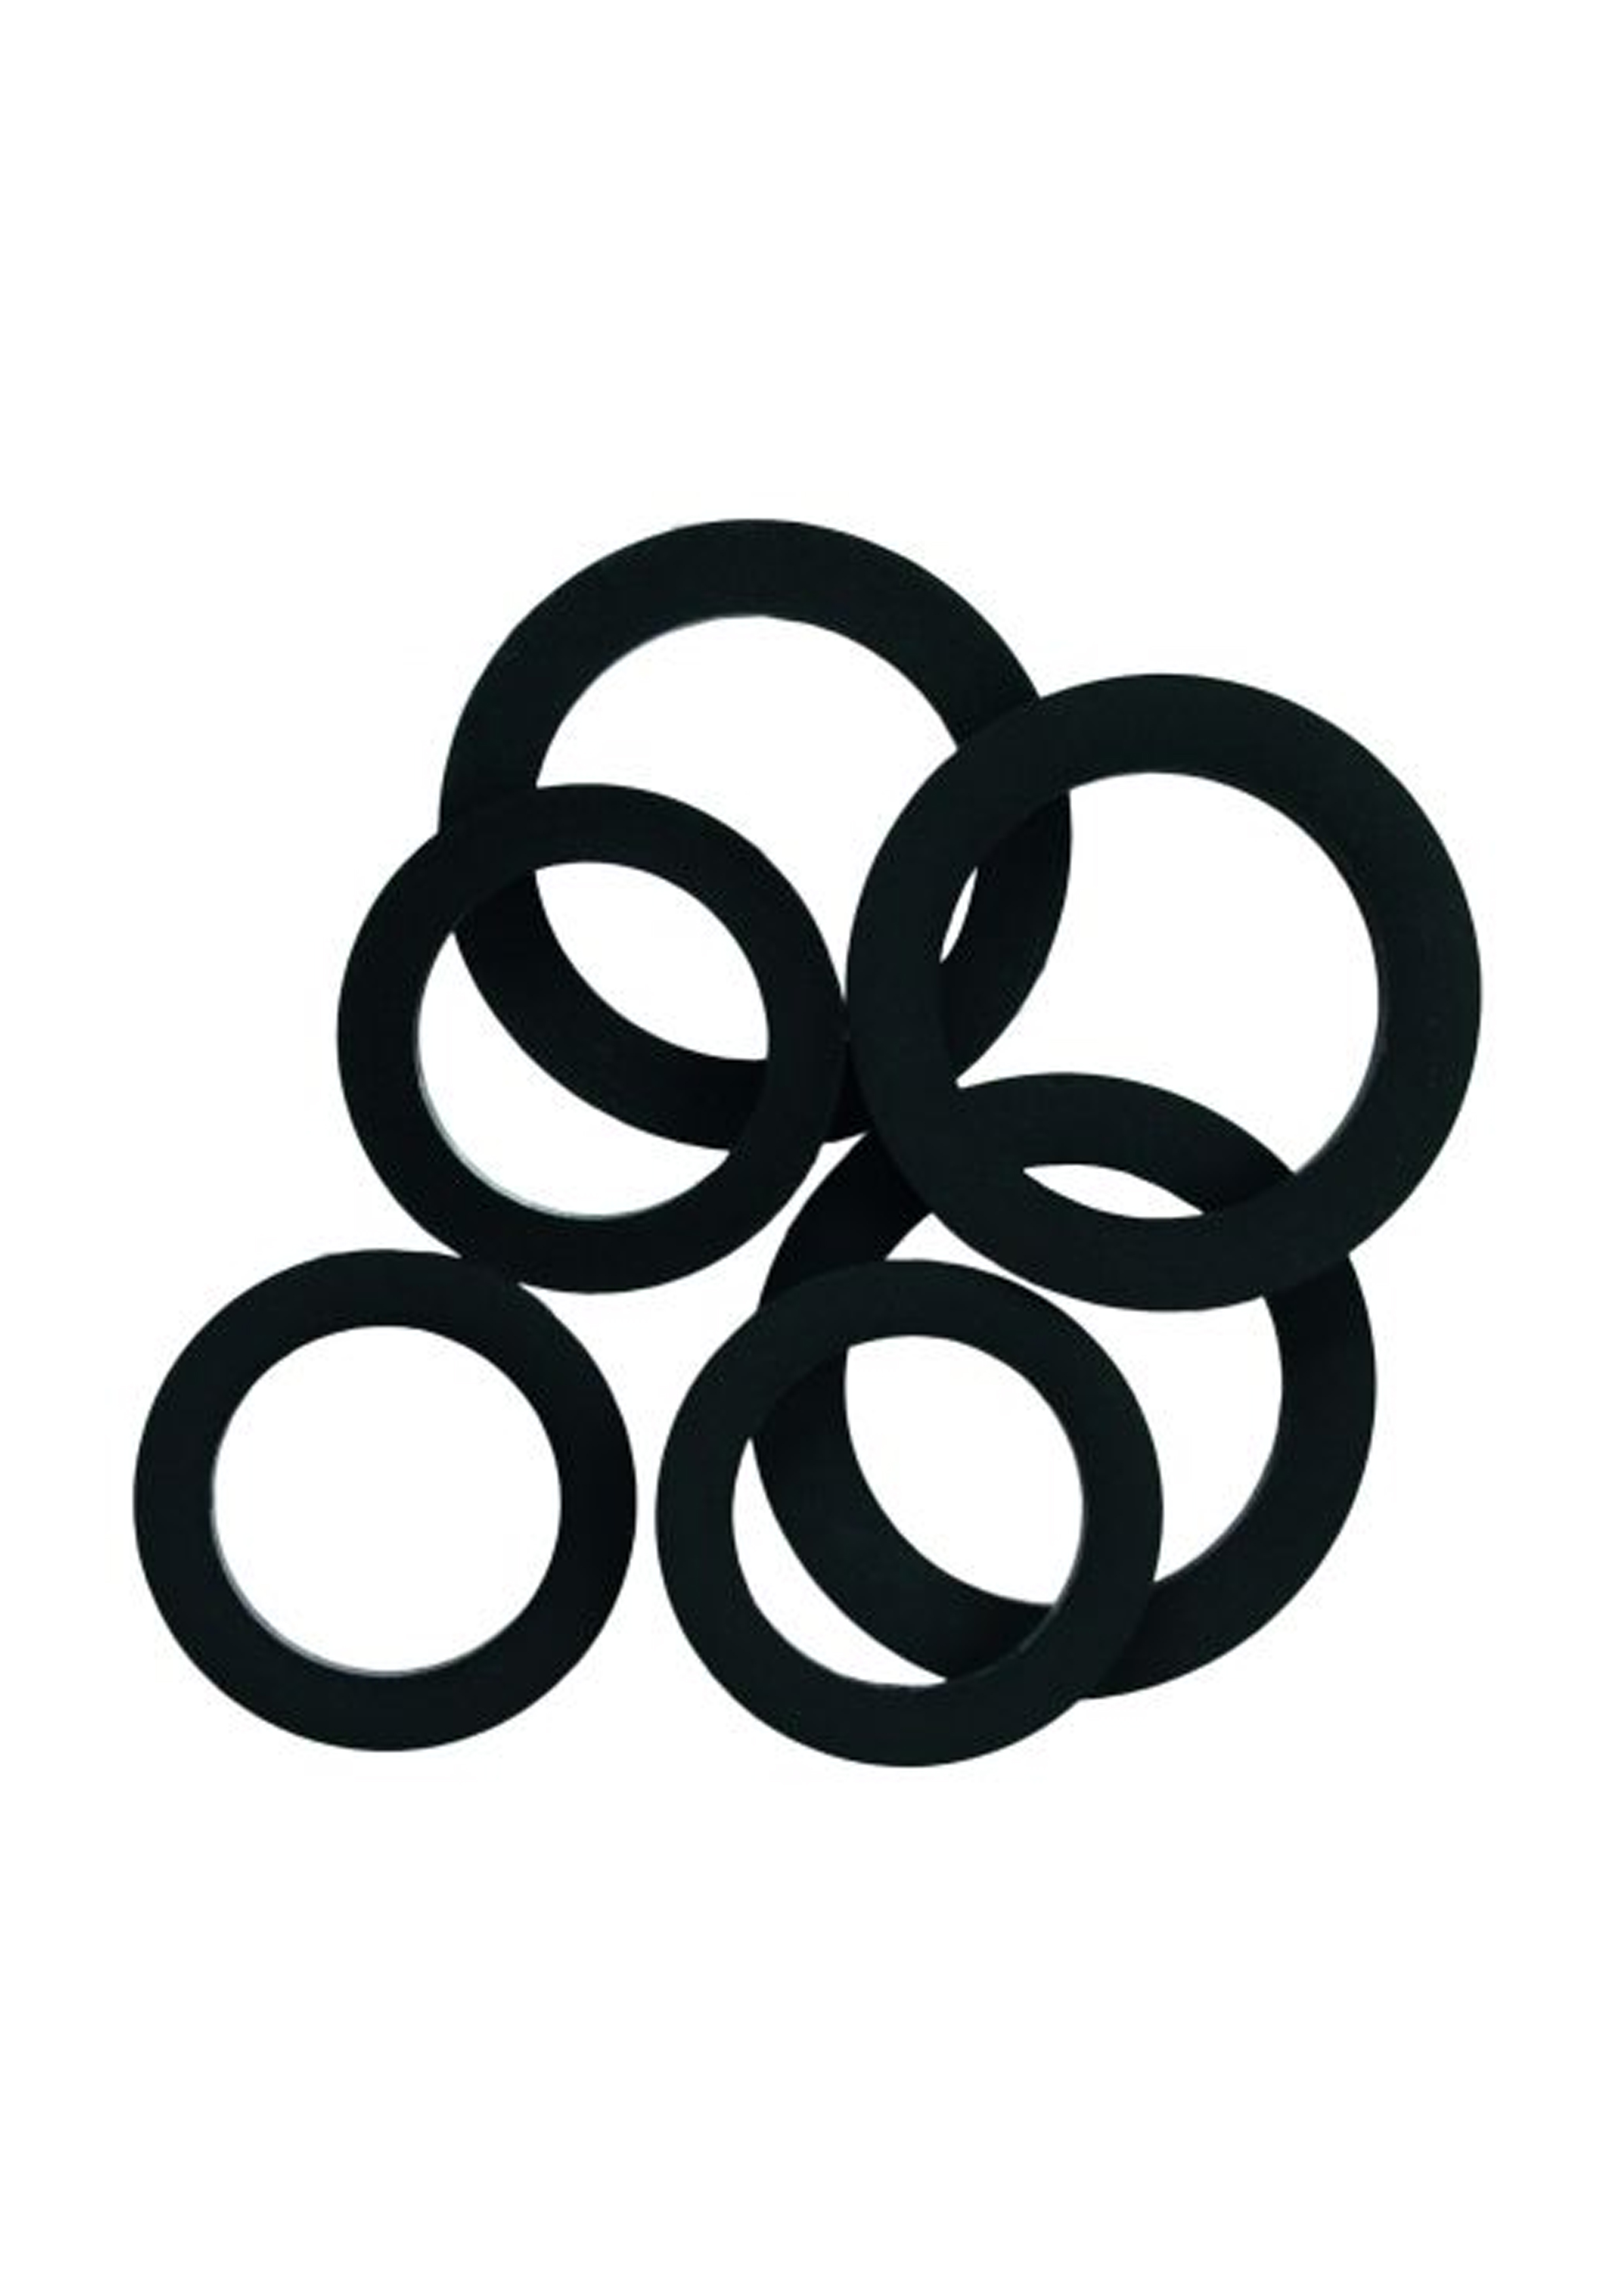 Seal Ring Kits (7004XY)